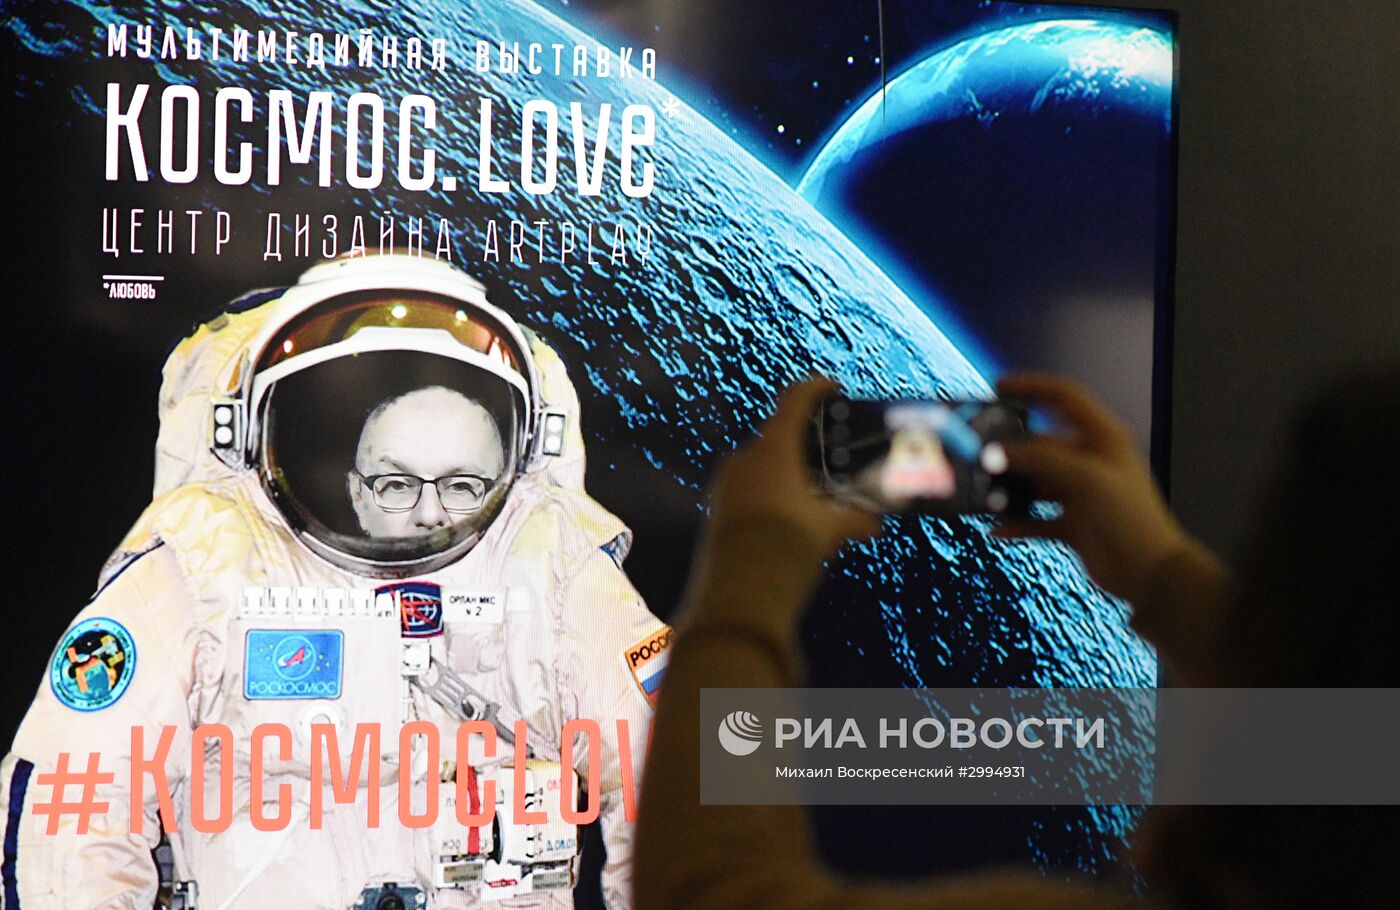 Открытие мультимедийной выставки "Космос. Love" в Москве